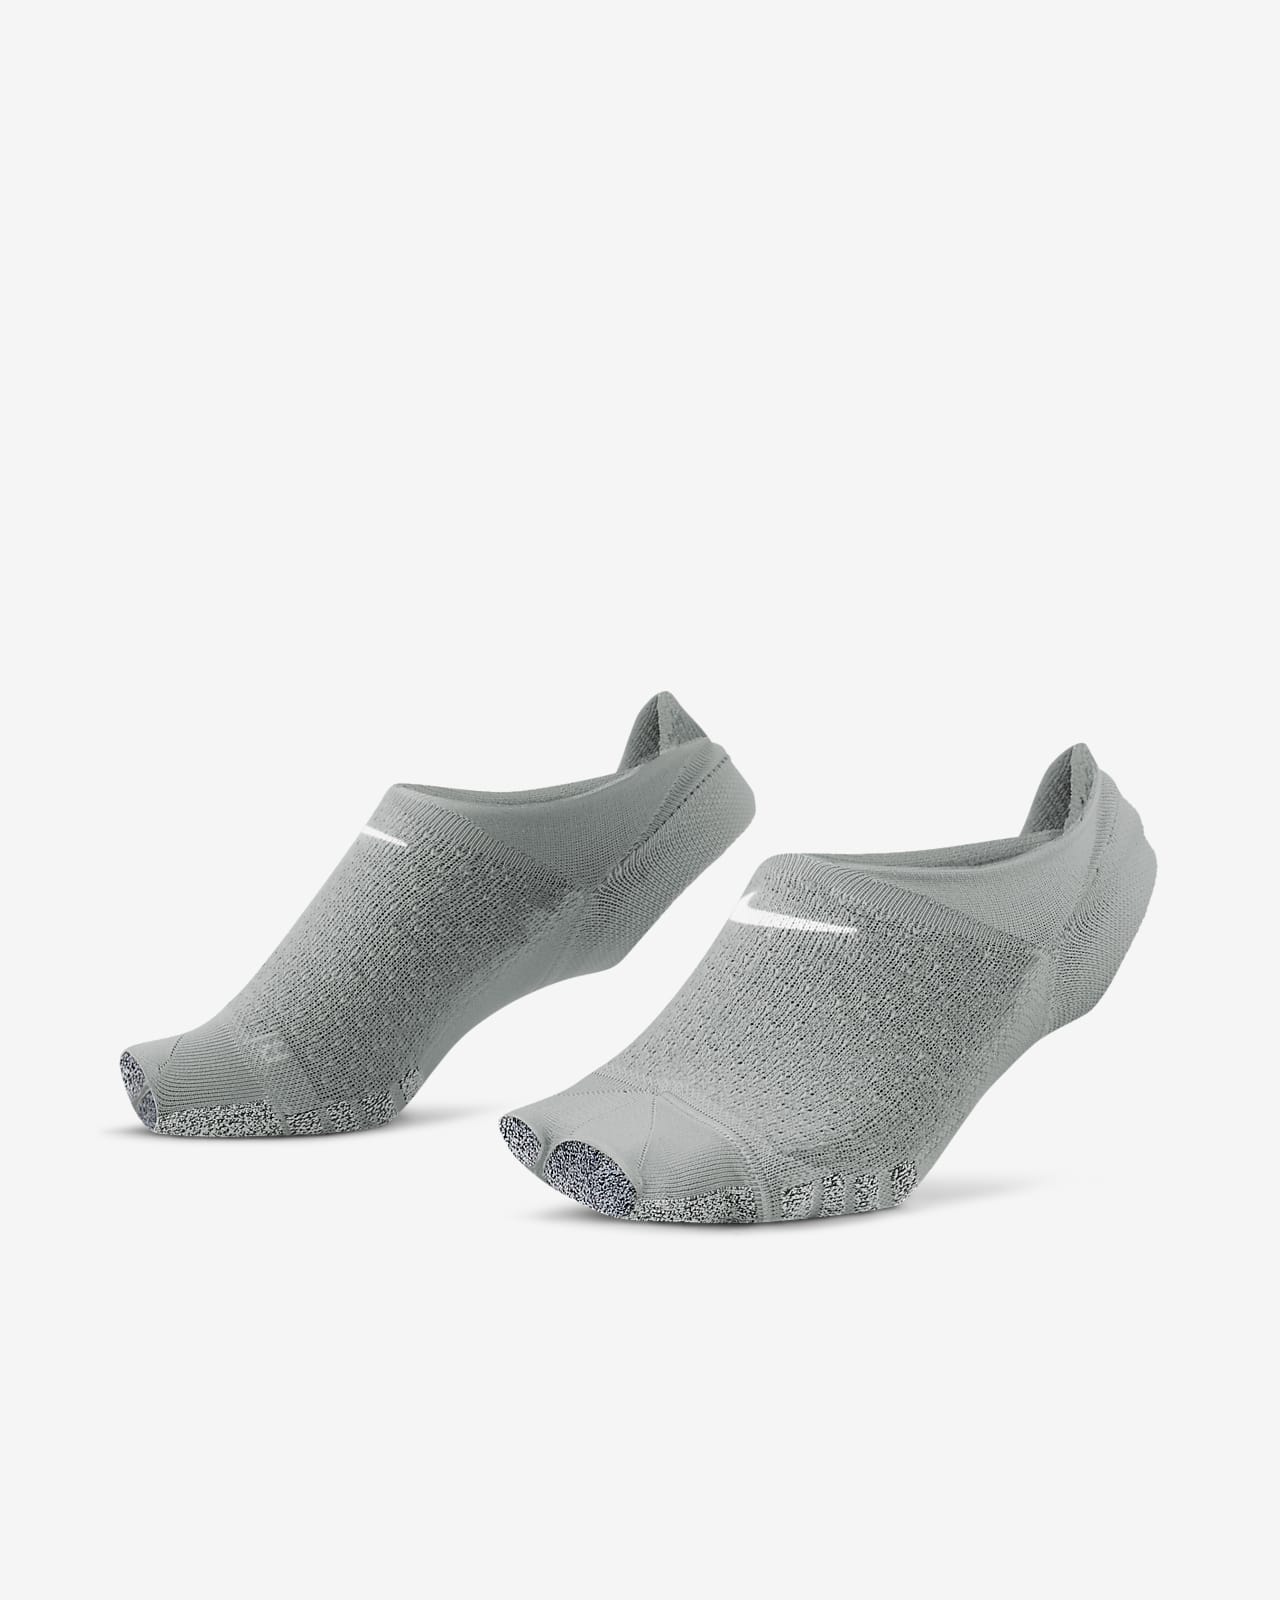 NikeGrip Dri-FIT pinkies sin puntera - Mujer. Nike ES